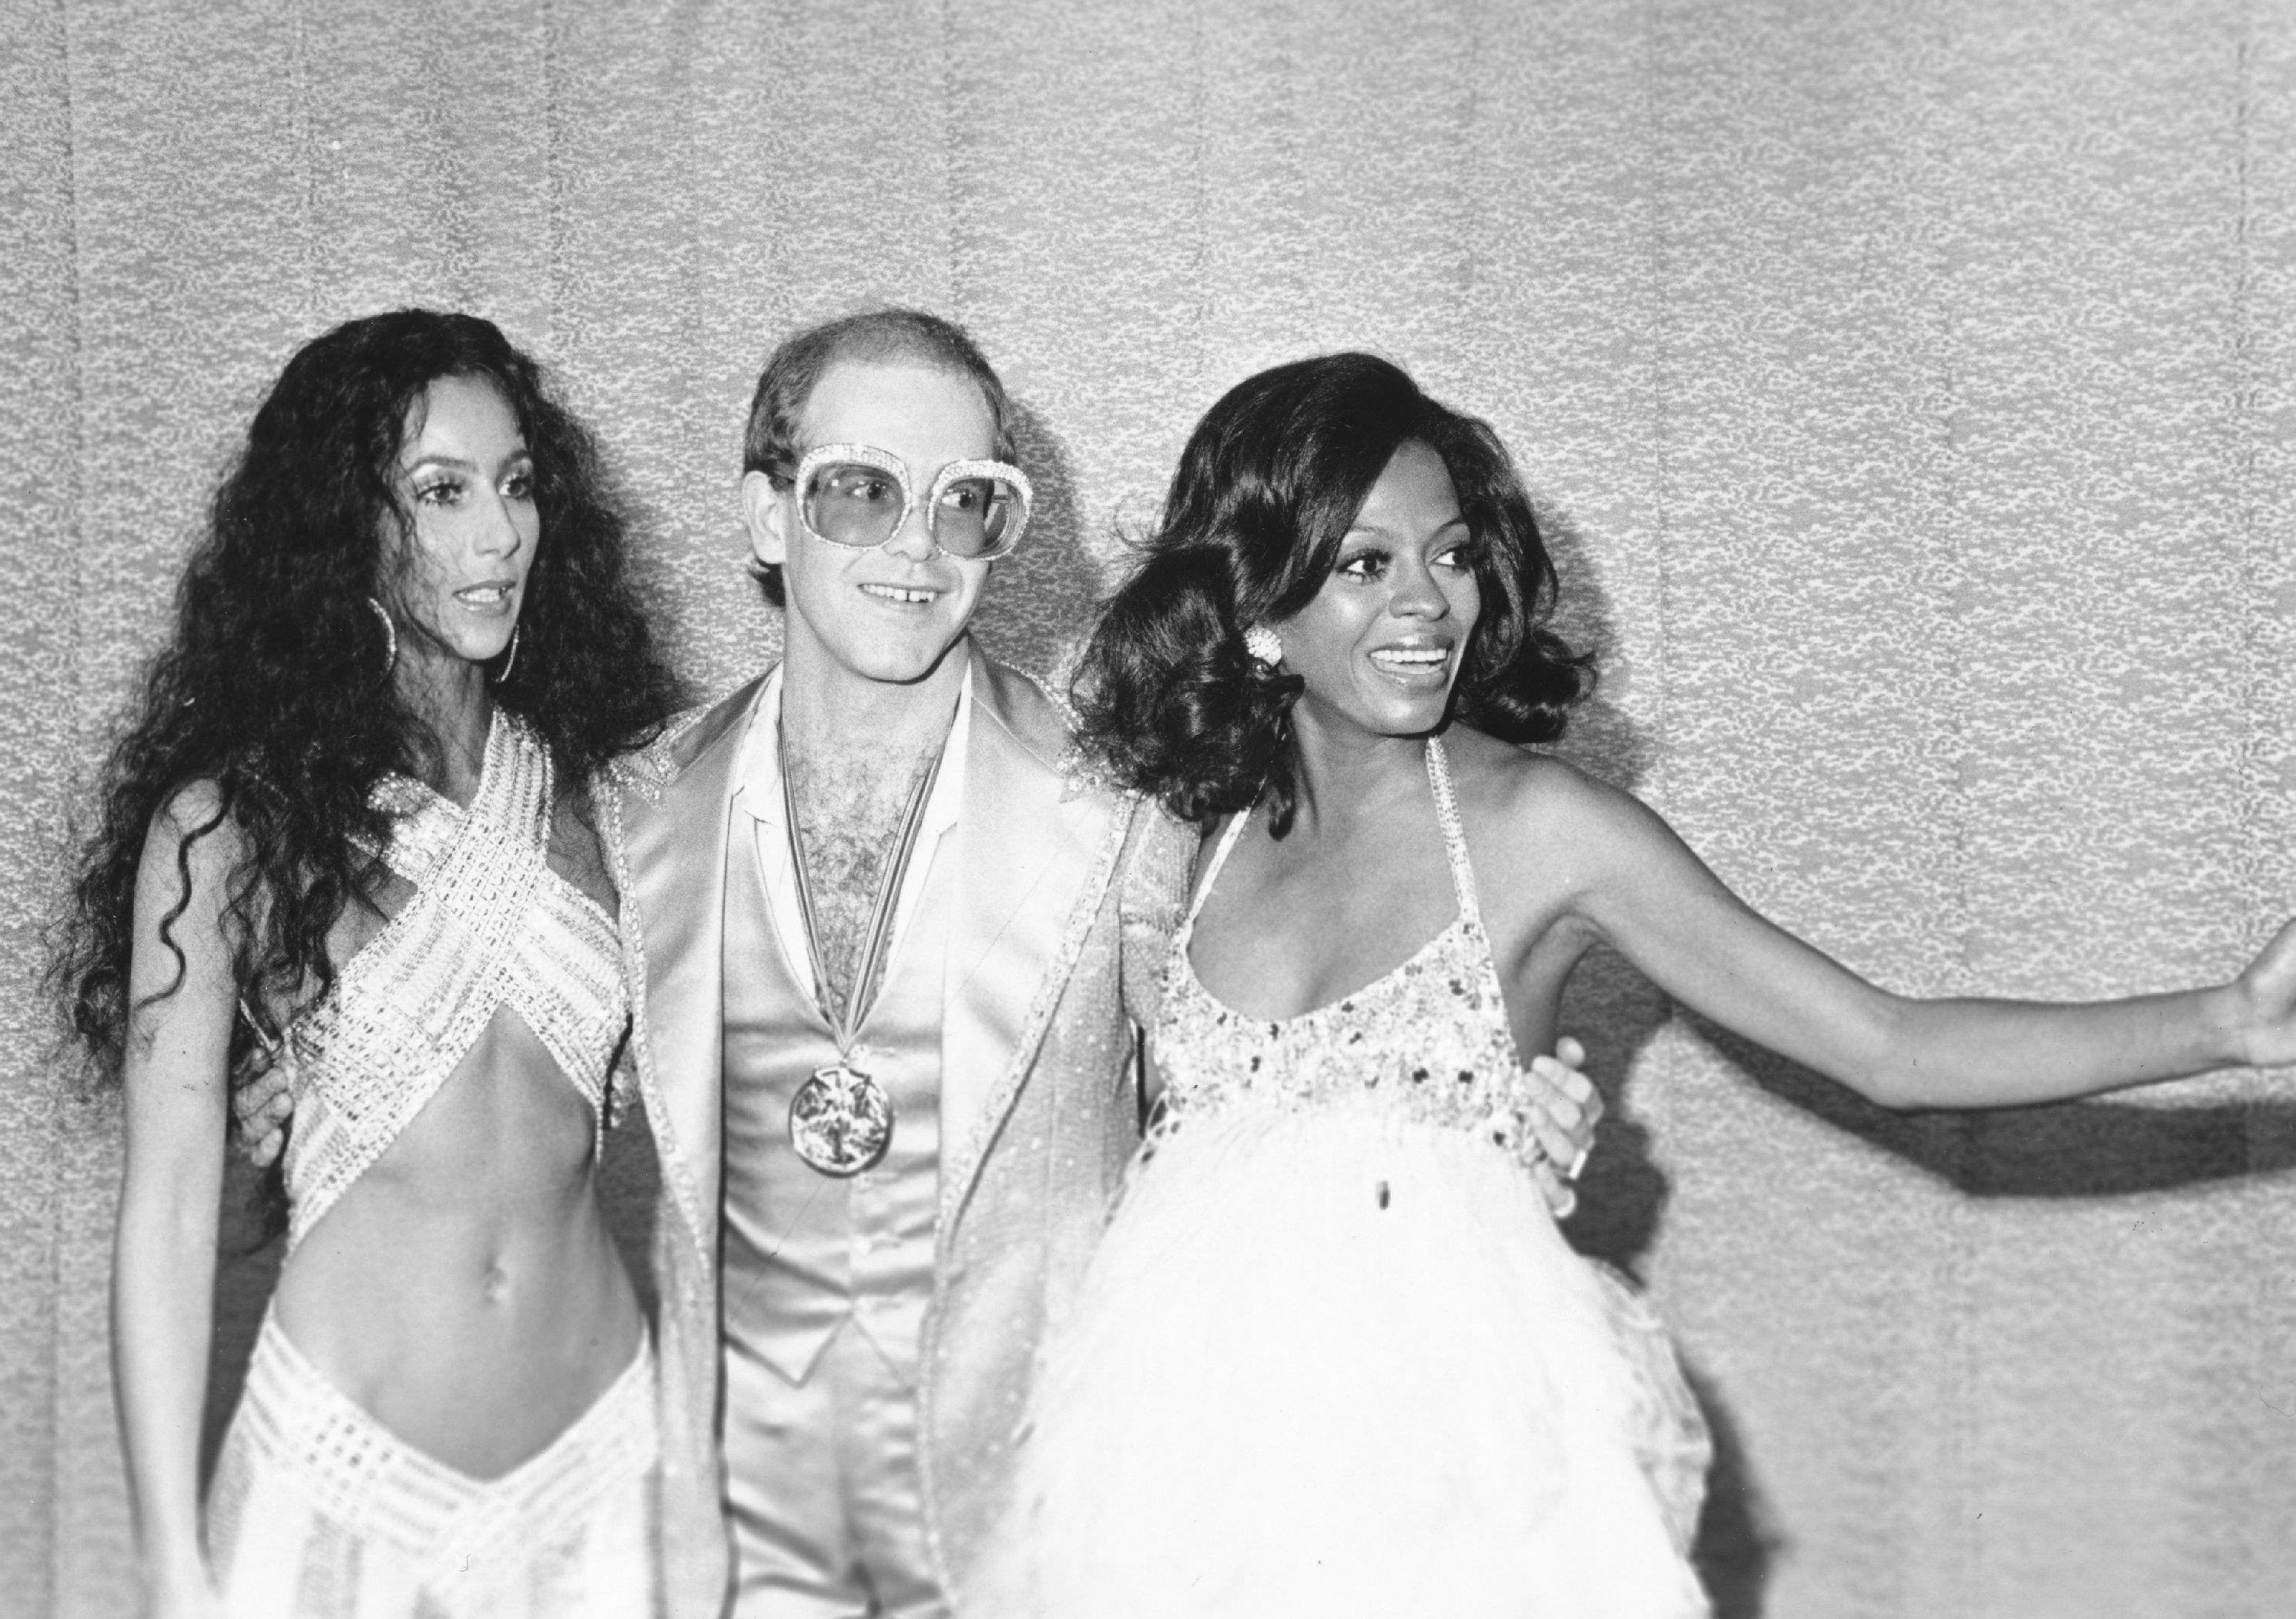 70s Disco Fashion - A Dive Into The ...